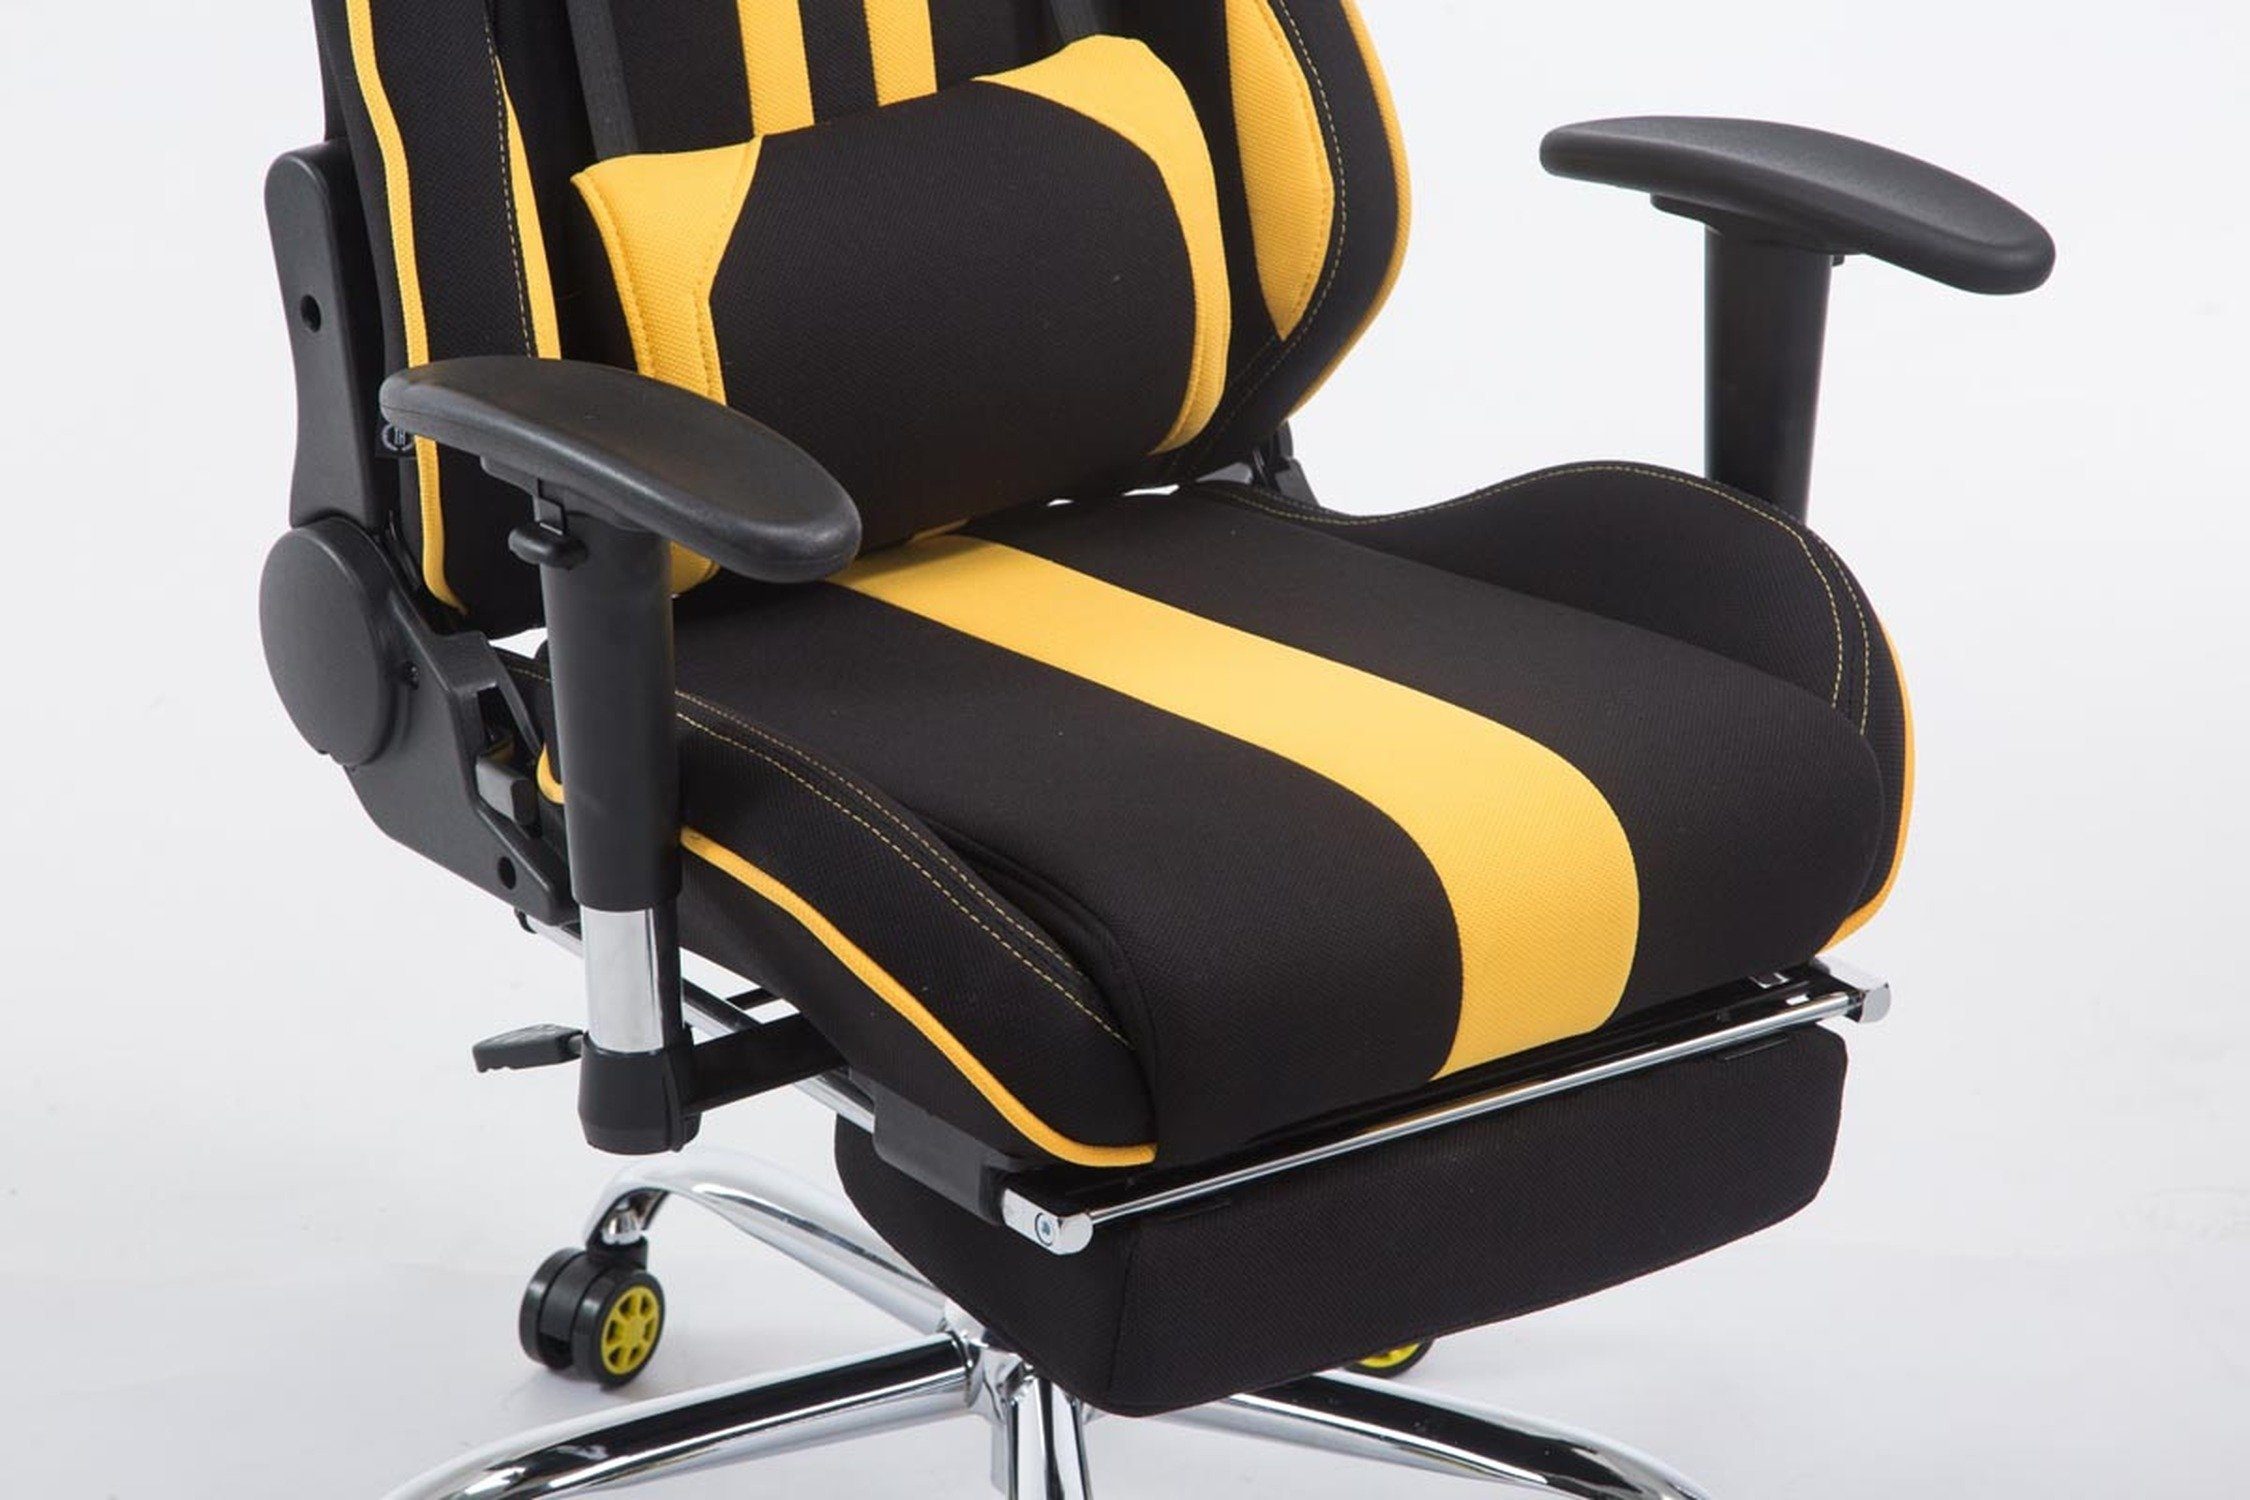 Rückenlehne bequemer drehbar Gestell: 360° - TPFLiving Stoff Gaming-Stuhl mit Limitless-2 Drehstuhl, (Schreibtischstuhl, Sitzfläche: - Metall höhenverstellbar - Racingstuhl, Gamingstuhl, Chefsessel), chrom schwarz/gelb